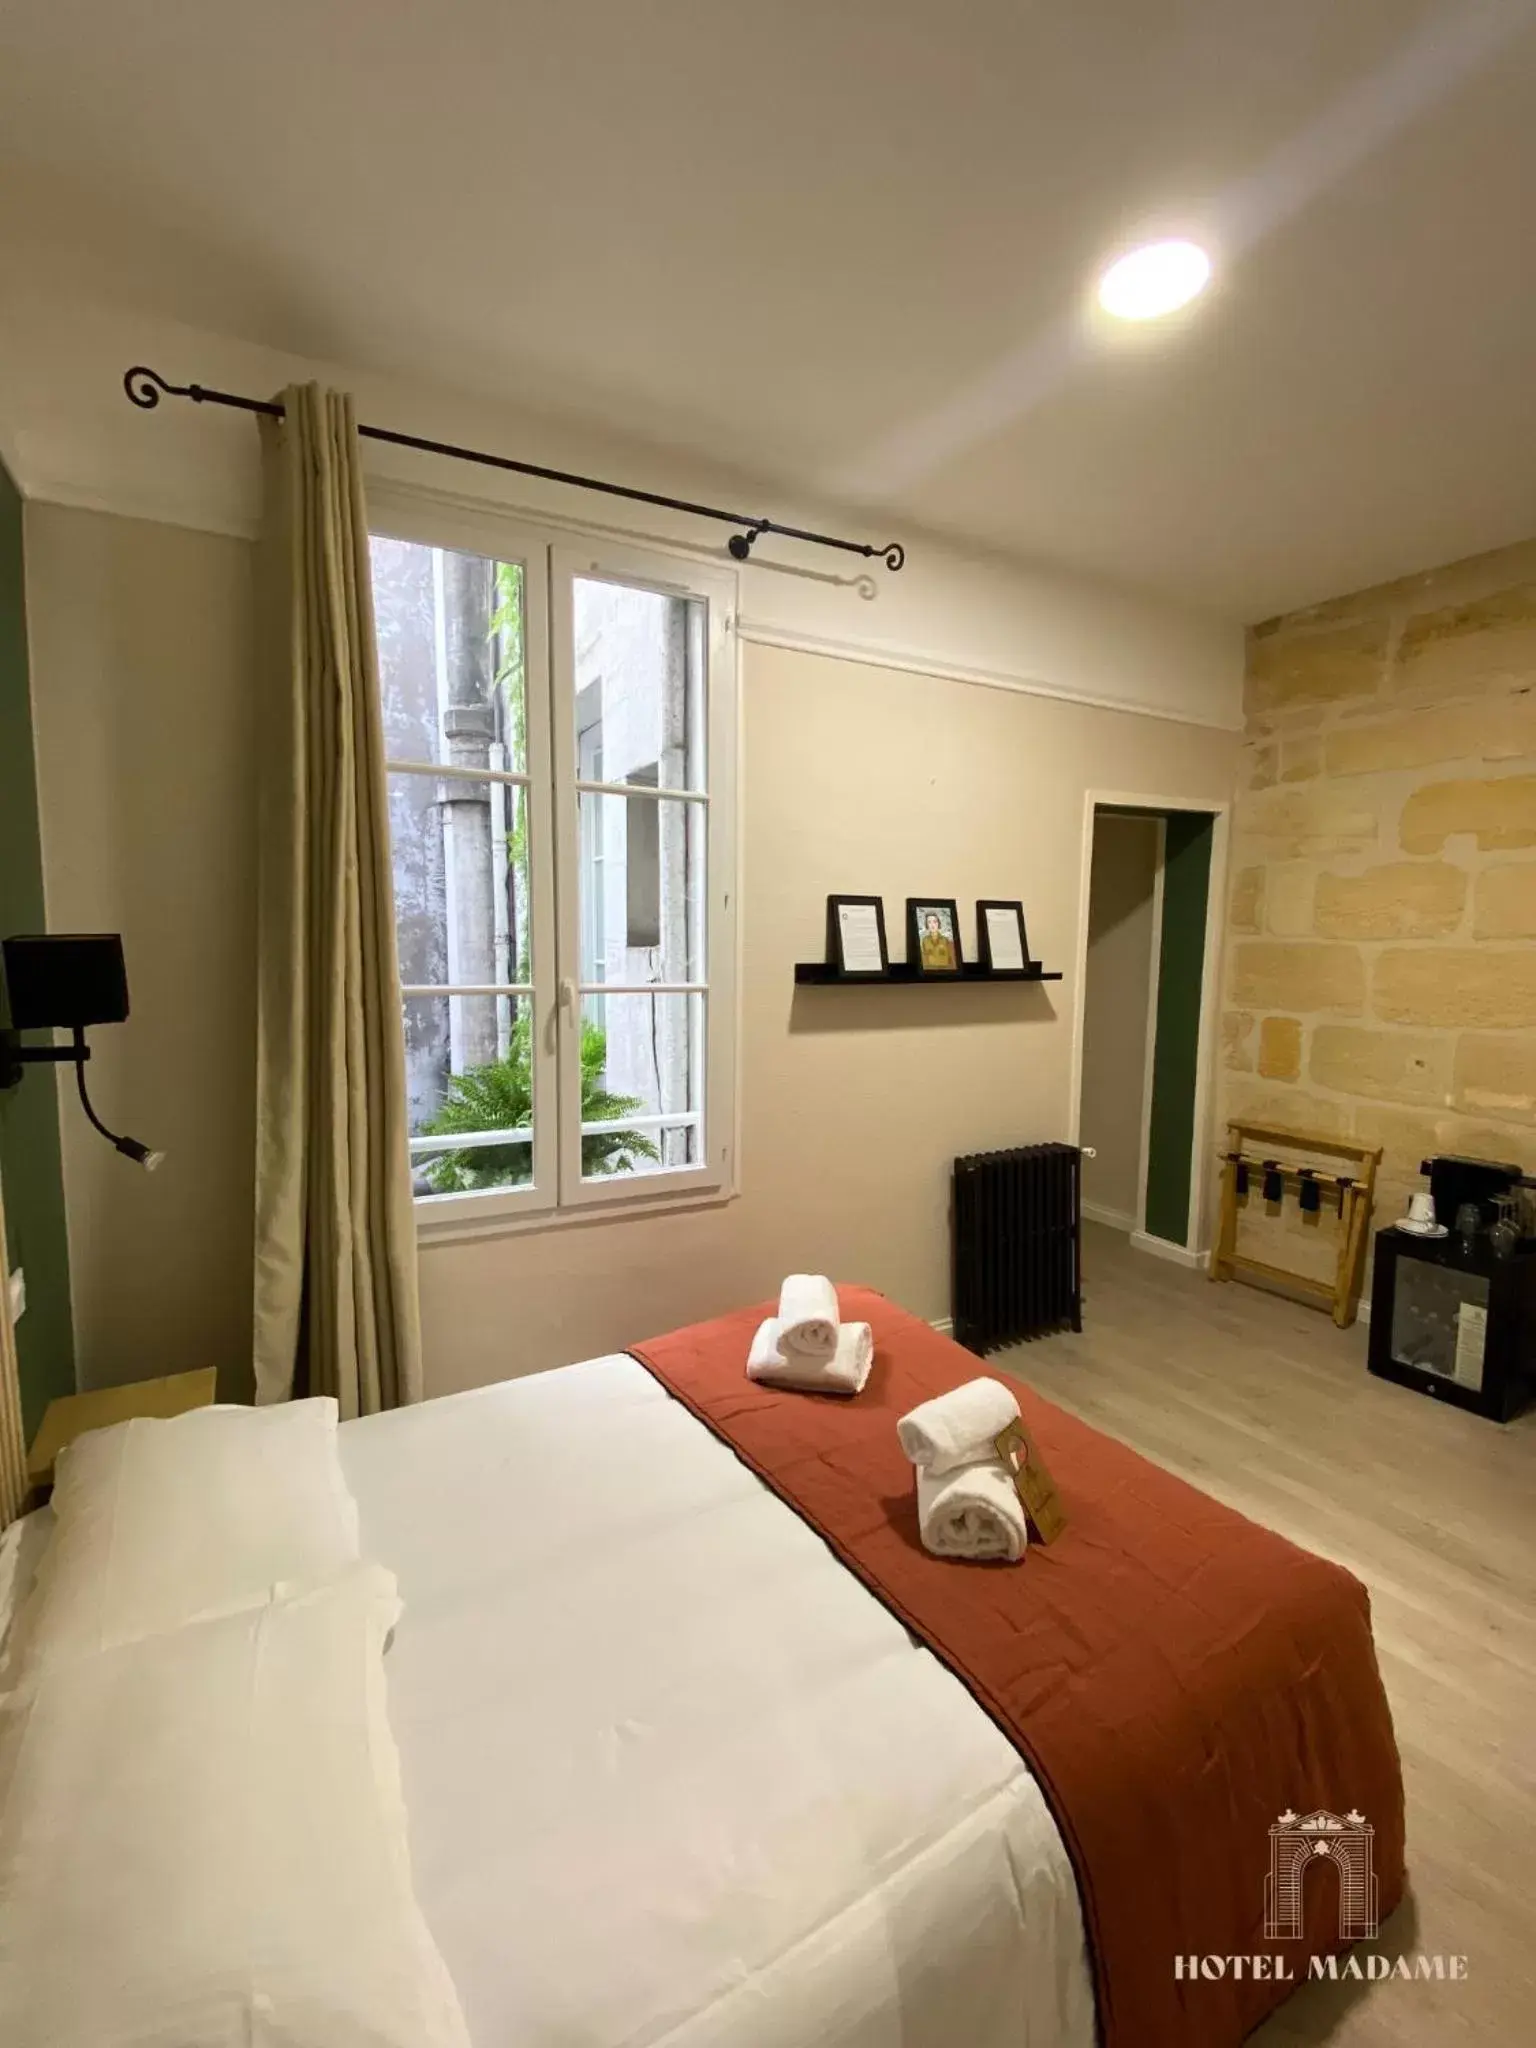 Bedroom in Hôtel Madame